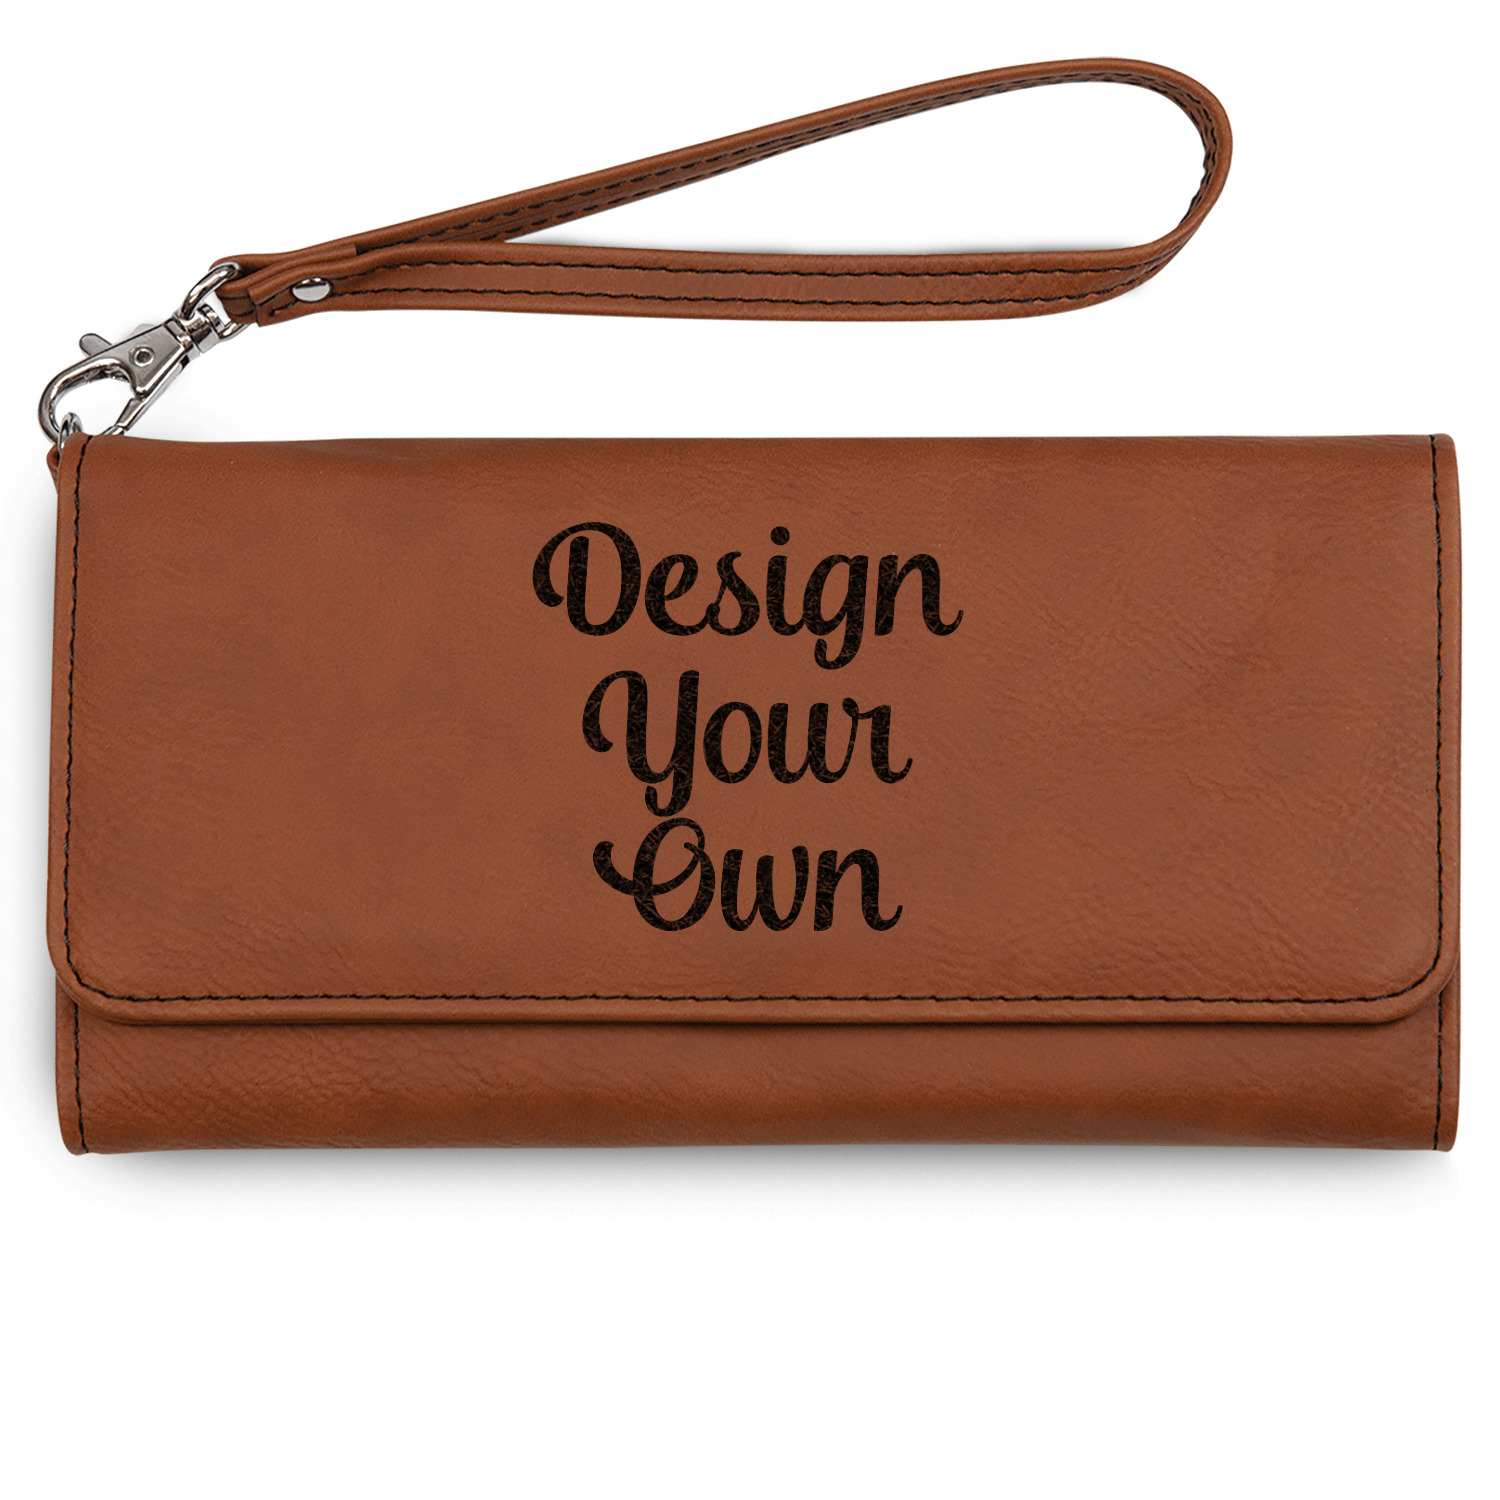 Designer Leather Tote Bags Vendors Private| Alibaba.com